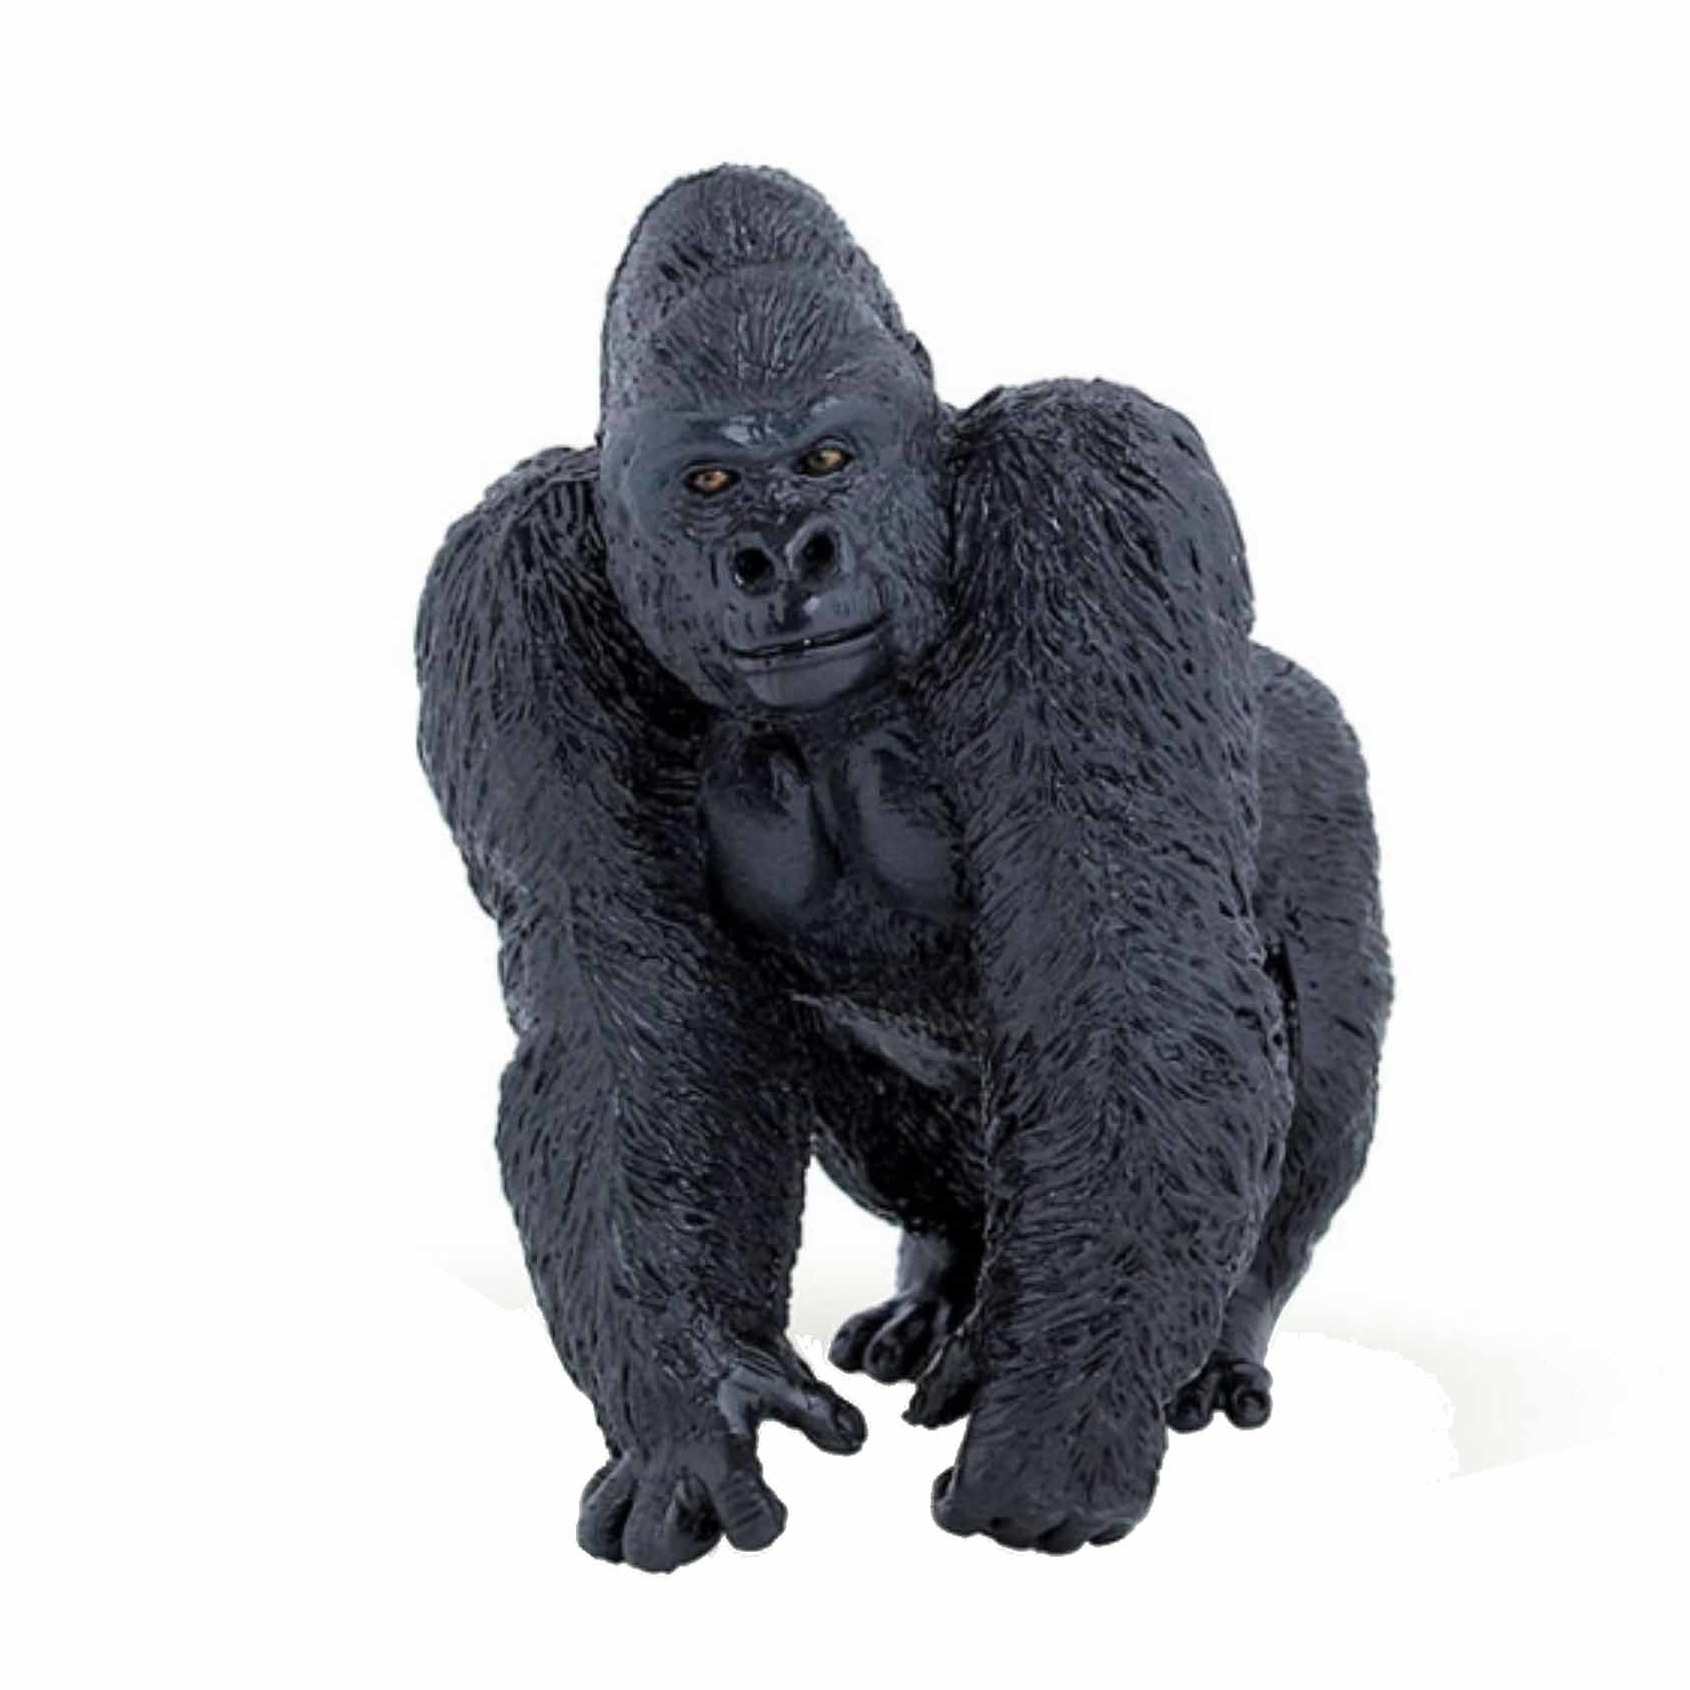 Afbeelding Gorilla speeldiertje 5 cm door Animals Giftshop